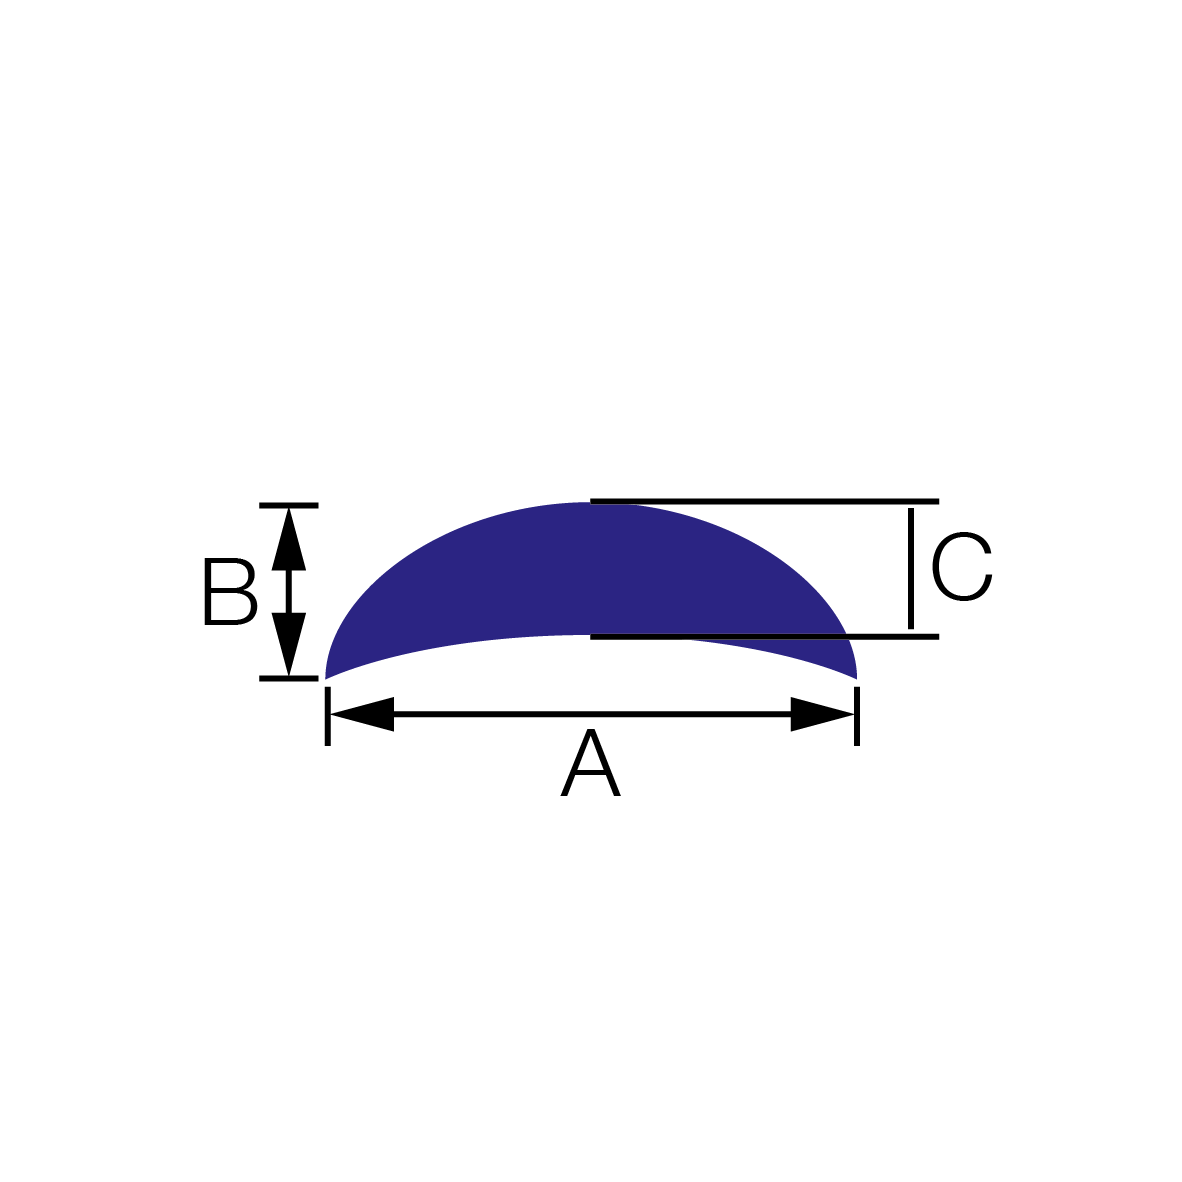 Polušuplji okrugli profili (u obliku srpa)